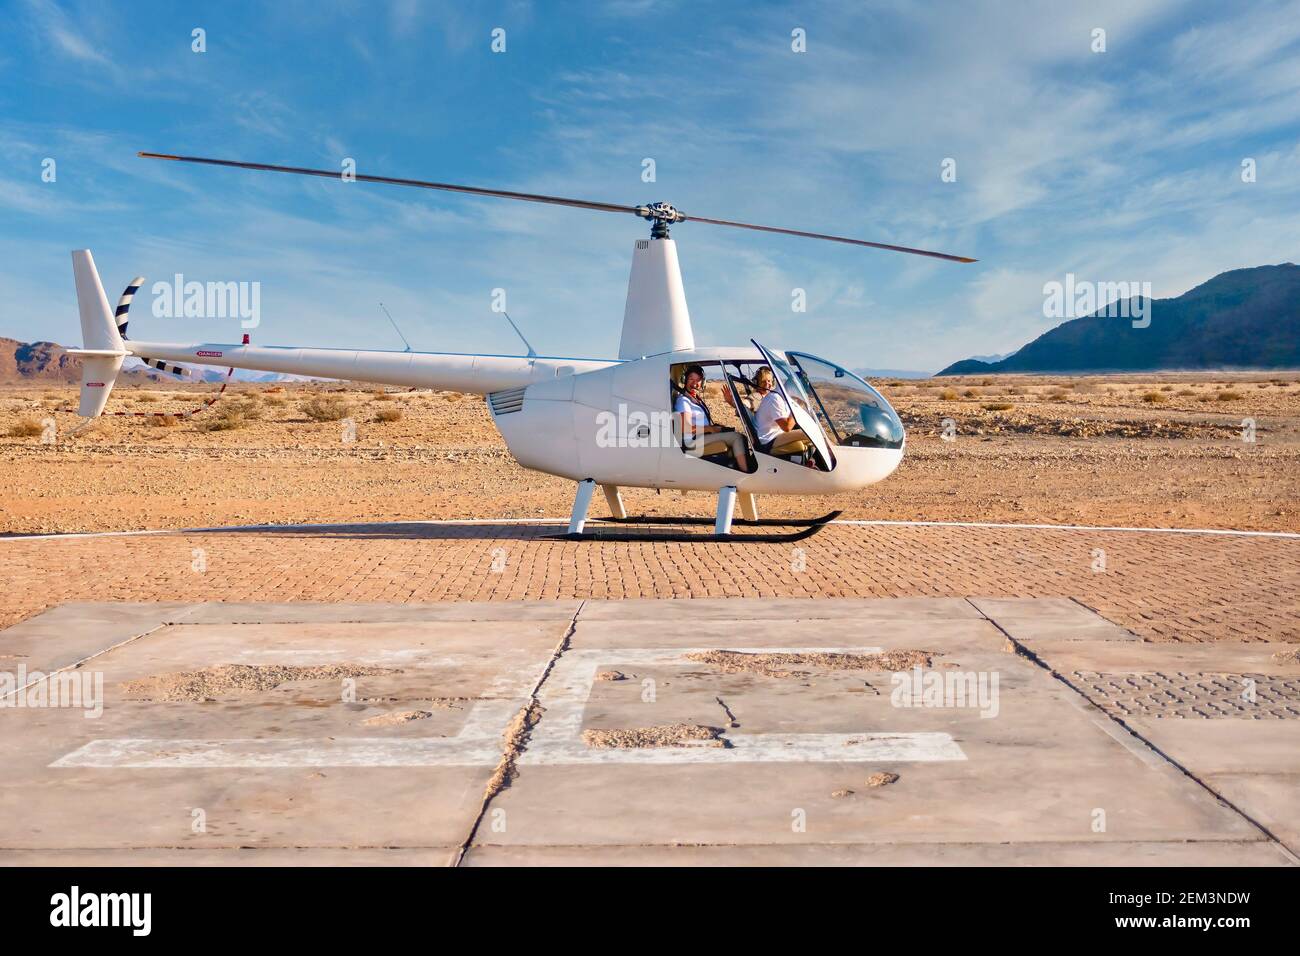 Sossusvlei, Namibie - 26 août 2016. Un hélicoptère touristique se trouve au sol tandis que le pilote se prépare à prendre un vol au-dessus du désert du Namib. Banque D'Images